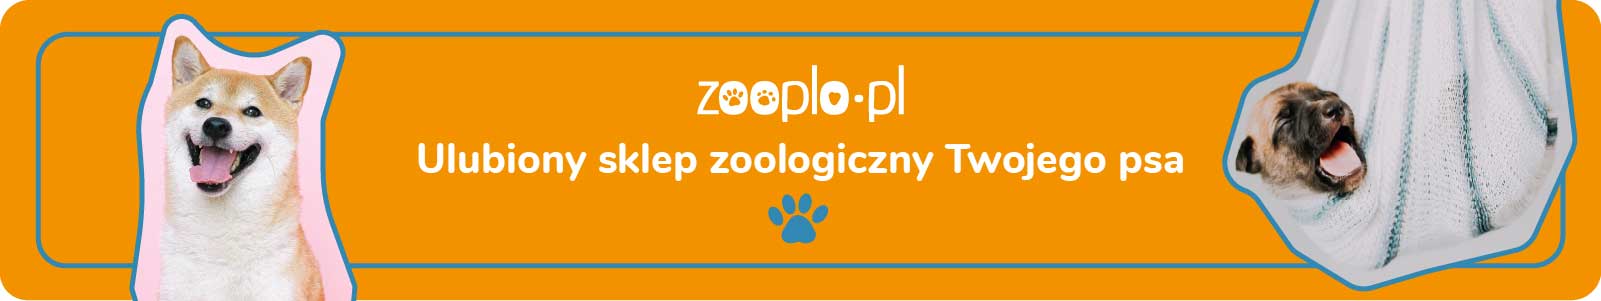 zooplo.pl - ulubiony sklep zoologiczny Twojego psa